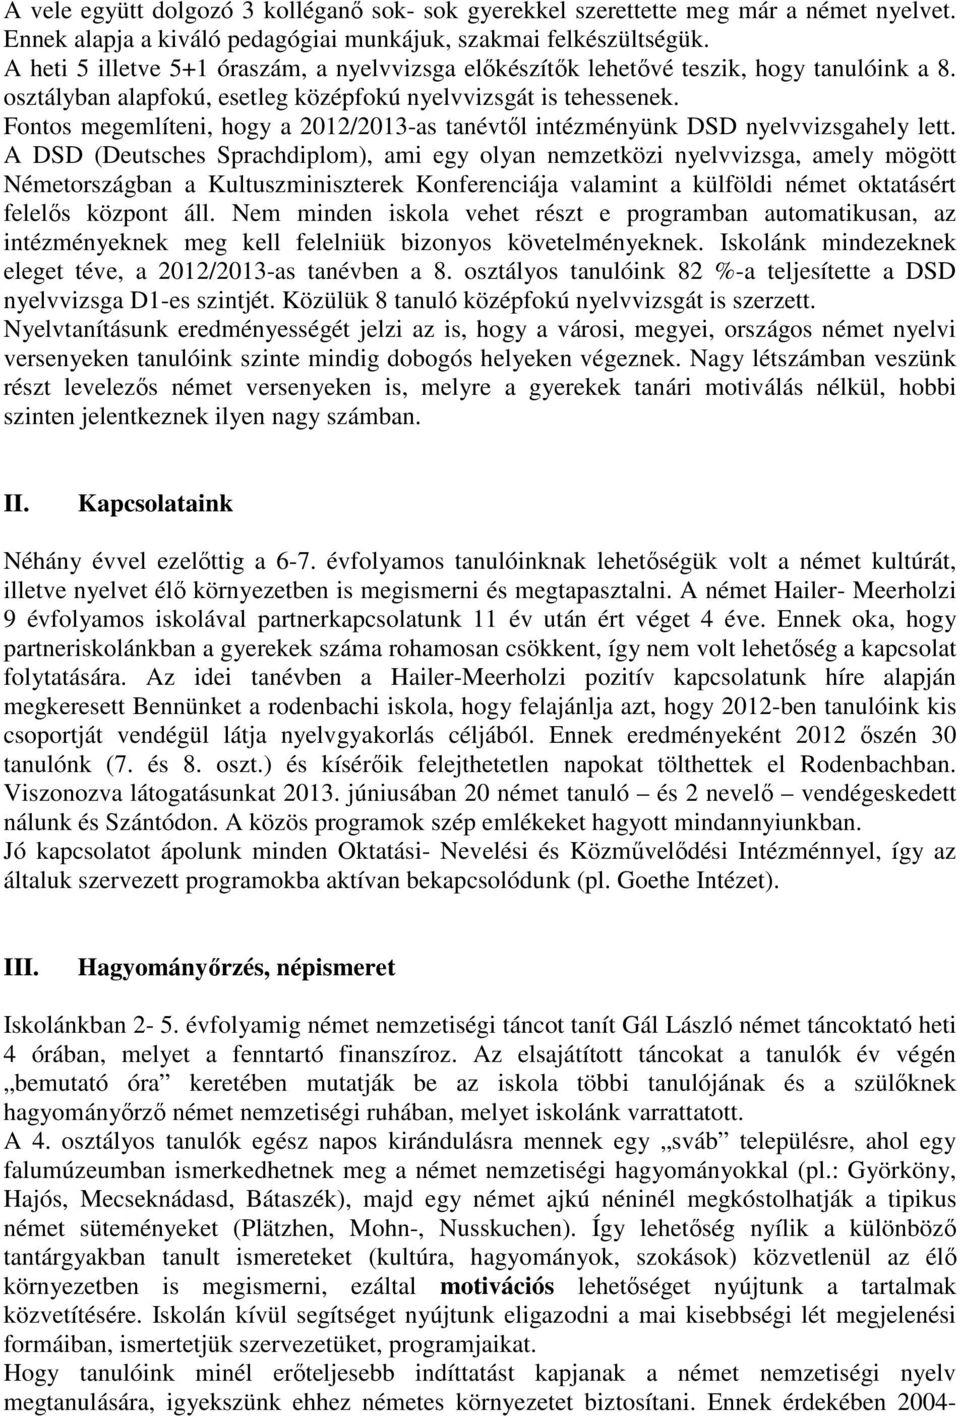 Fontos megemlíteni, hogy a 2012/2013-as tanévtıl intézményünk DSD nyelvvizsgahely lett.